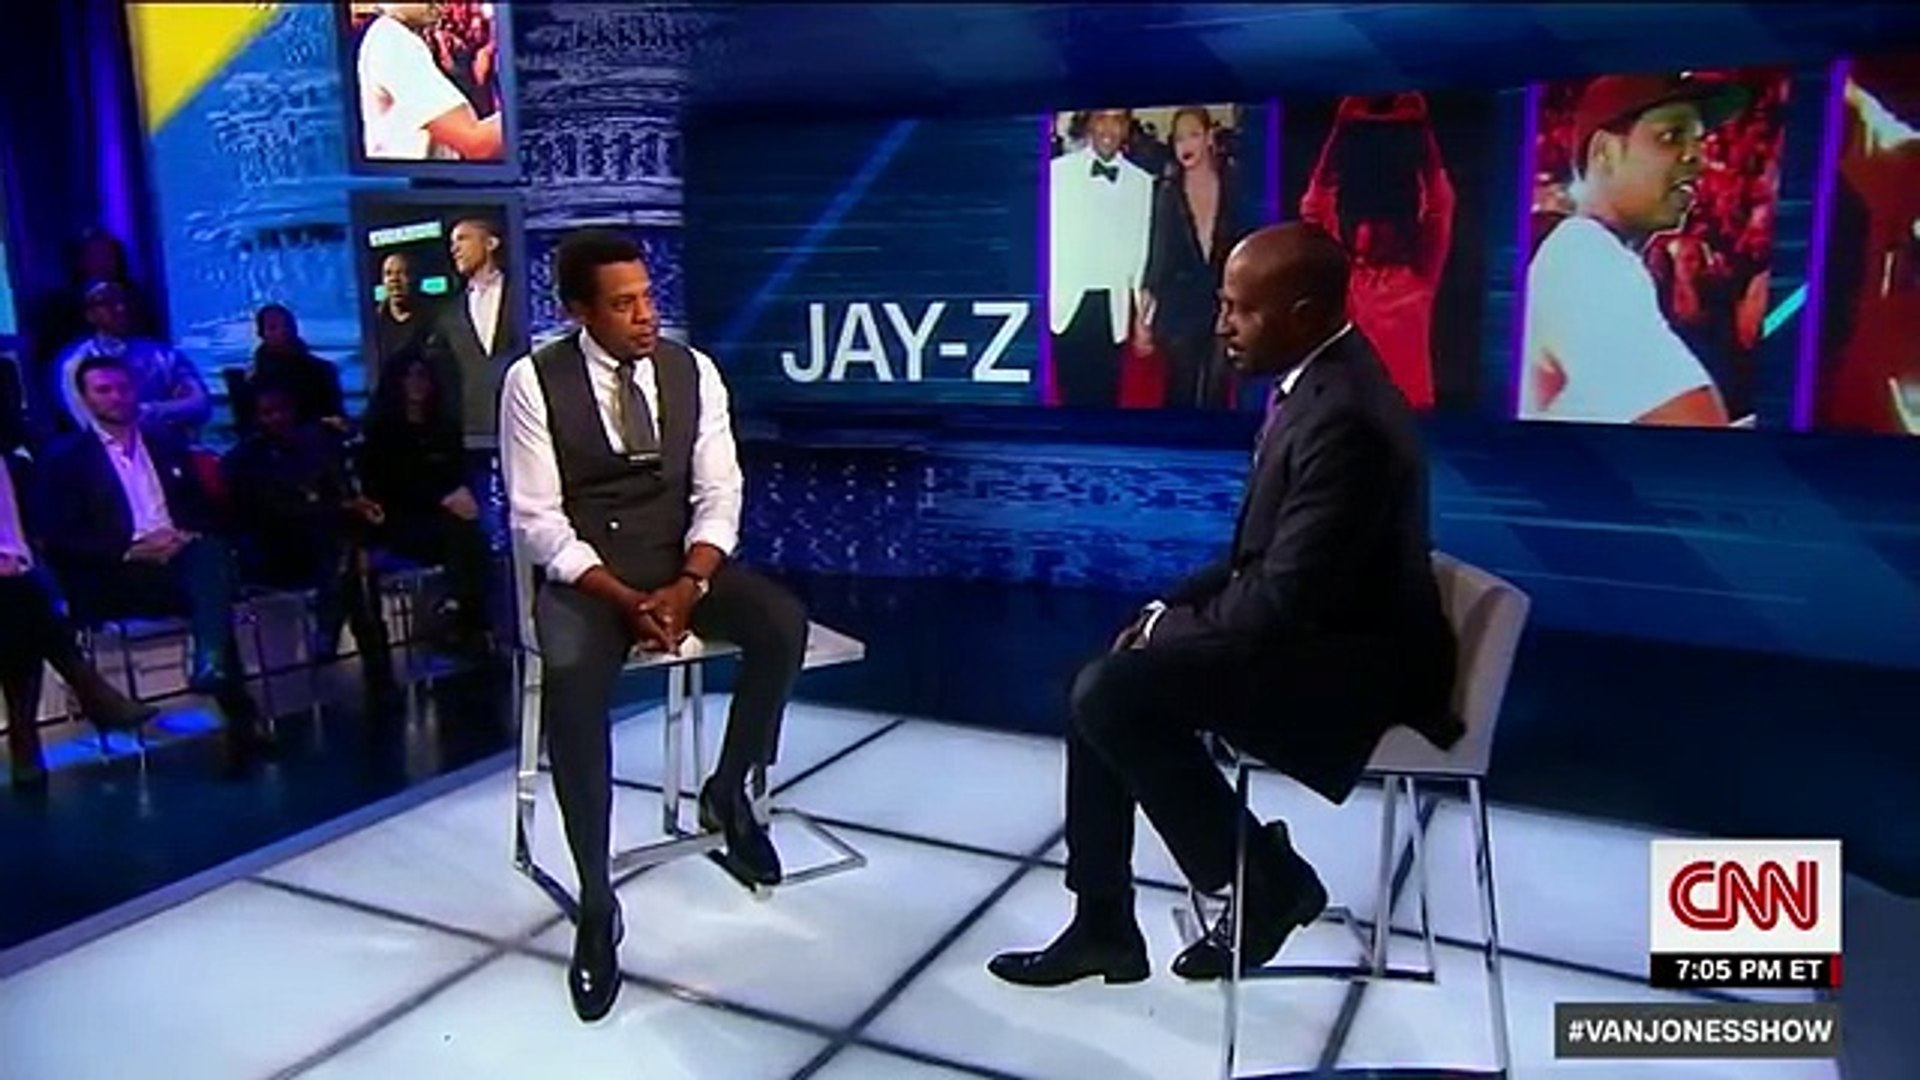 Jay z Van Jones interviews Jay-Z on CNN